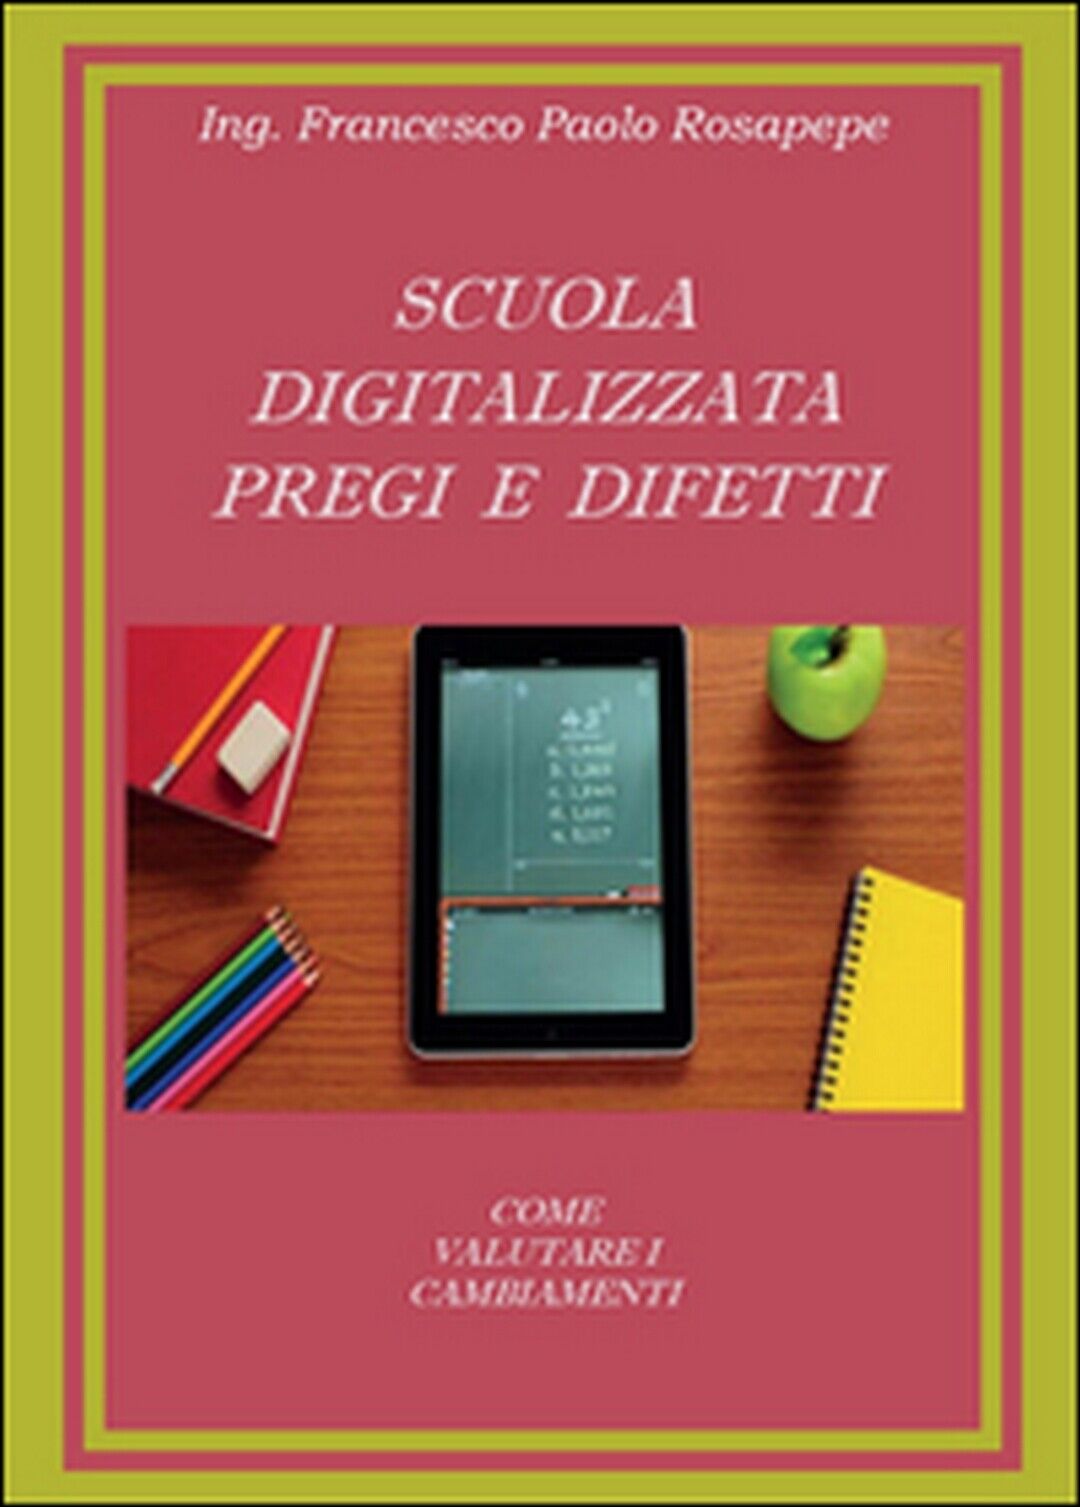 Scuola digitalizzata: pregi e difetti , Francesco P. Rosapepe,  2014,  Youcanpri libro usato